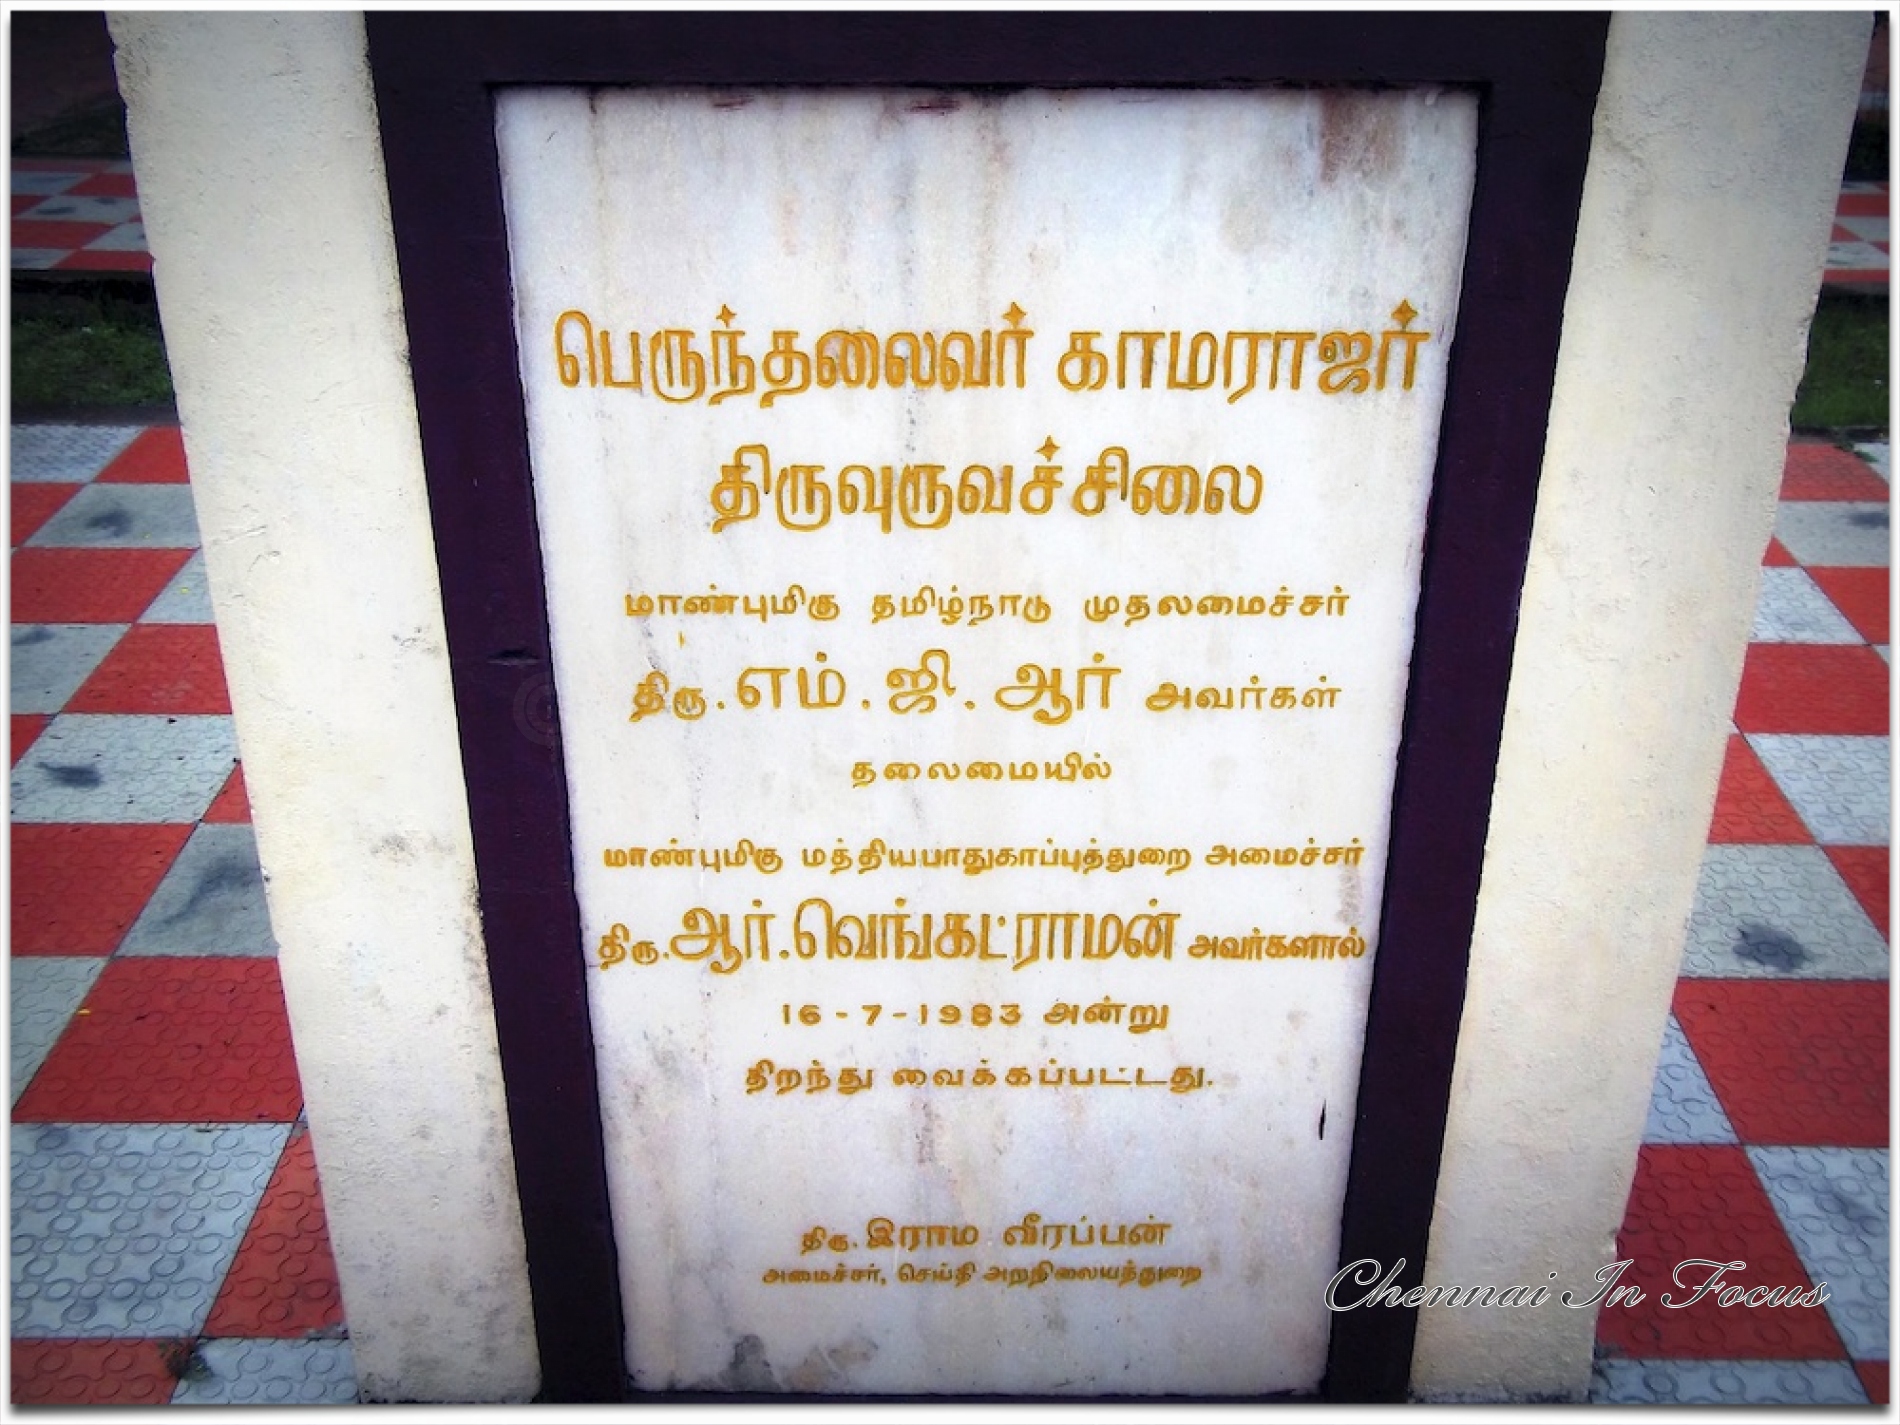 Kamaraj Memorial House - Chennai In Focus